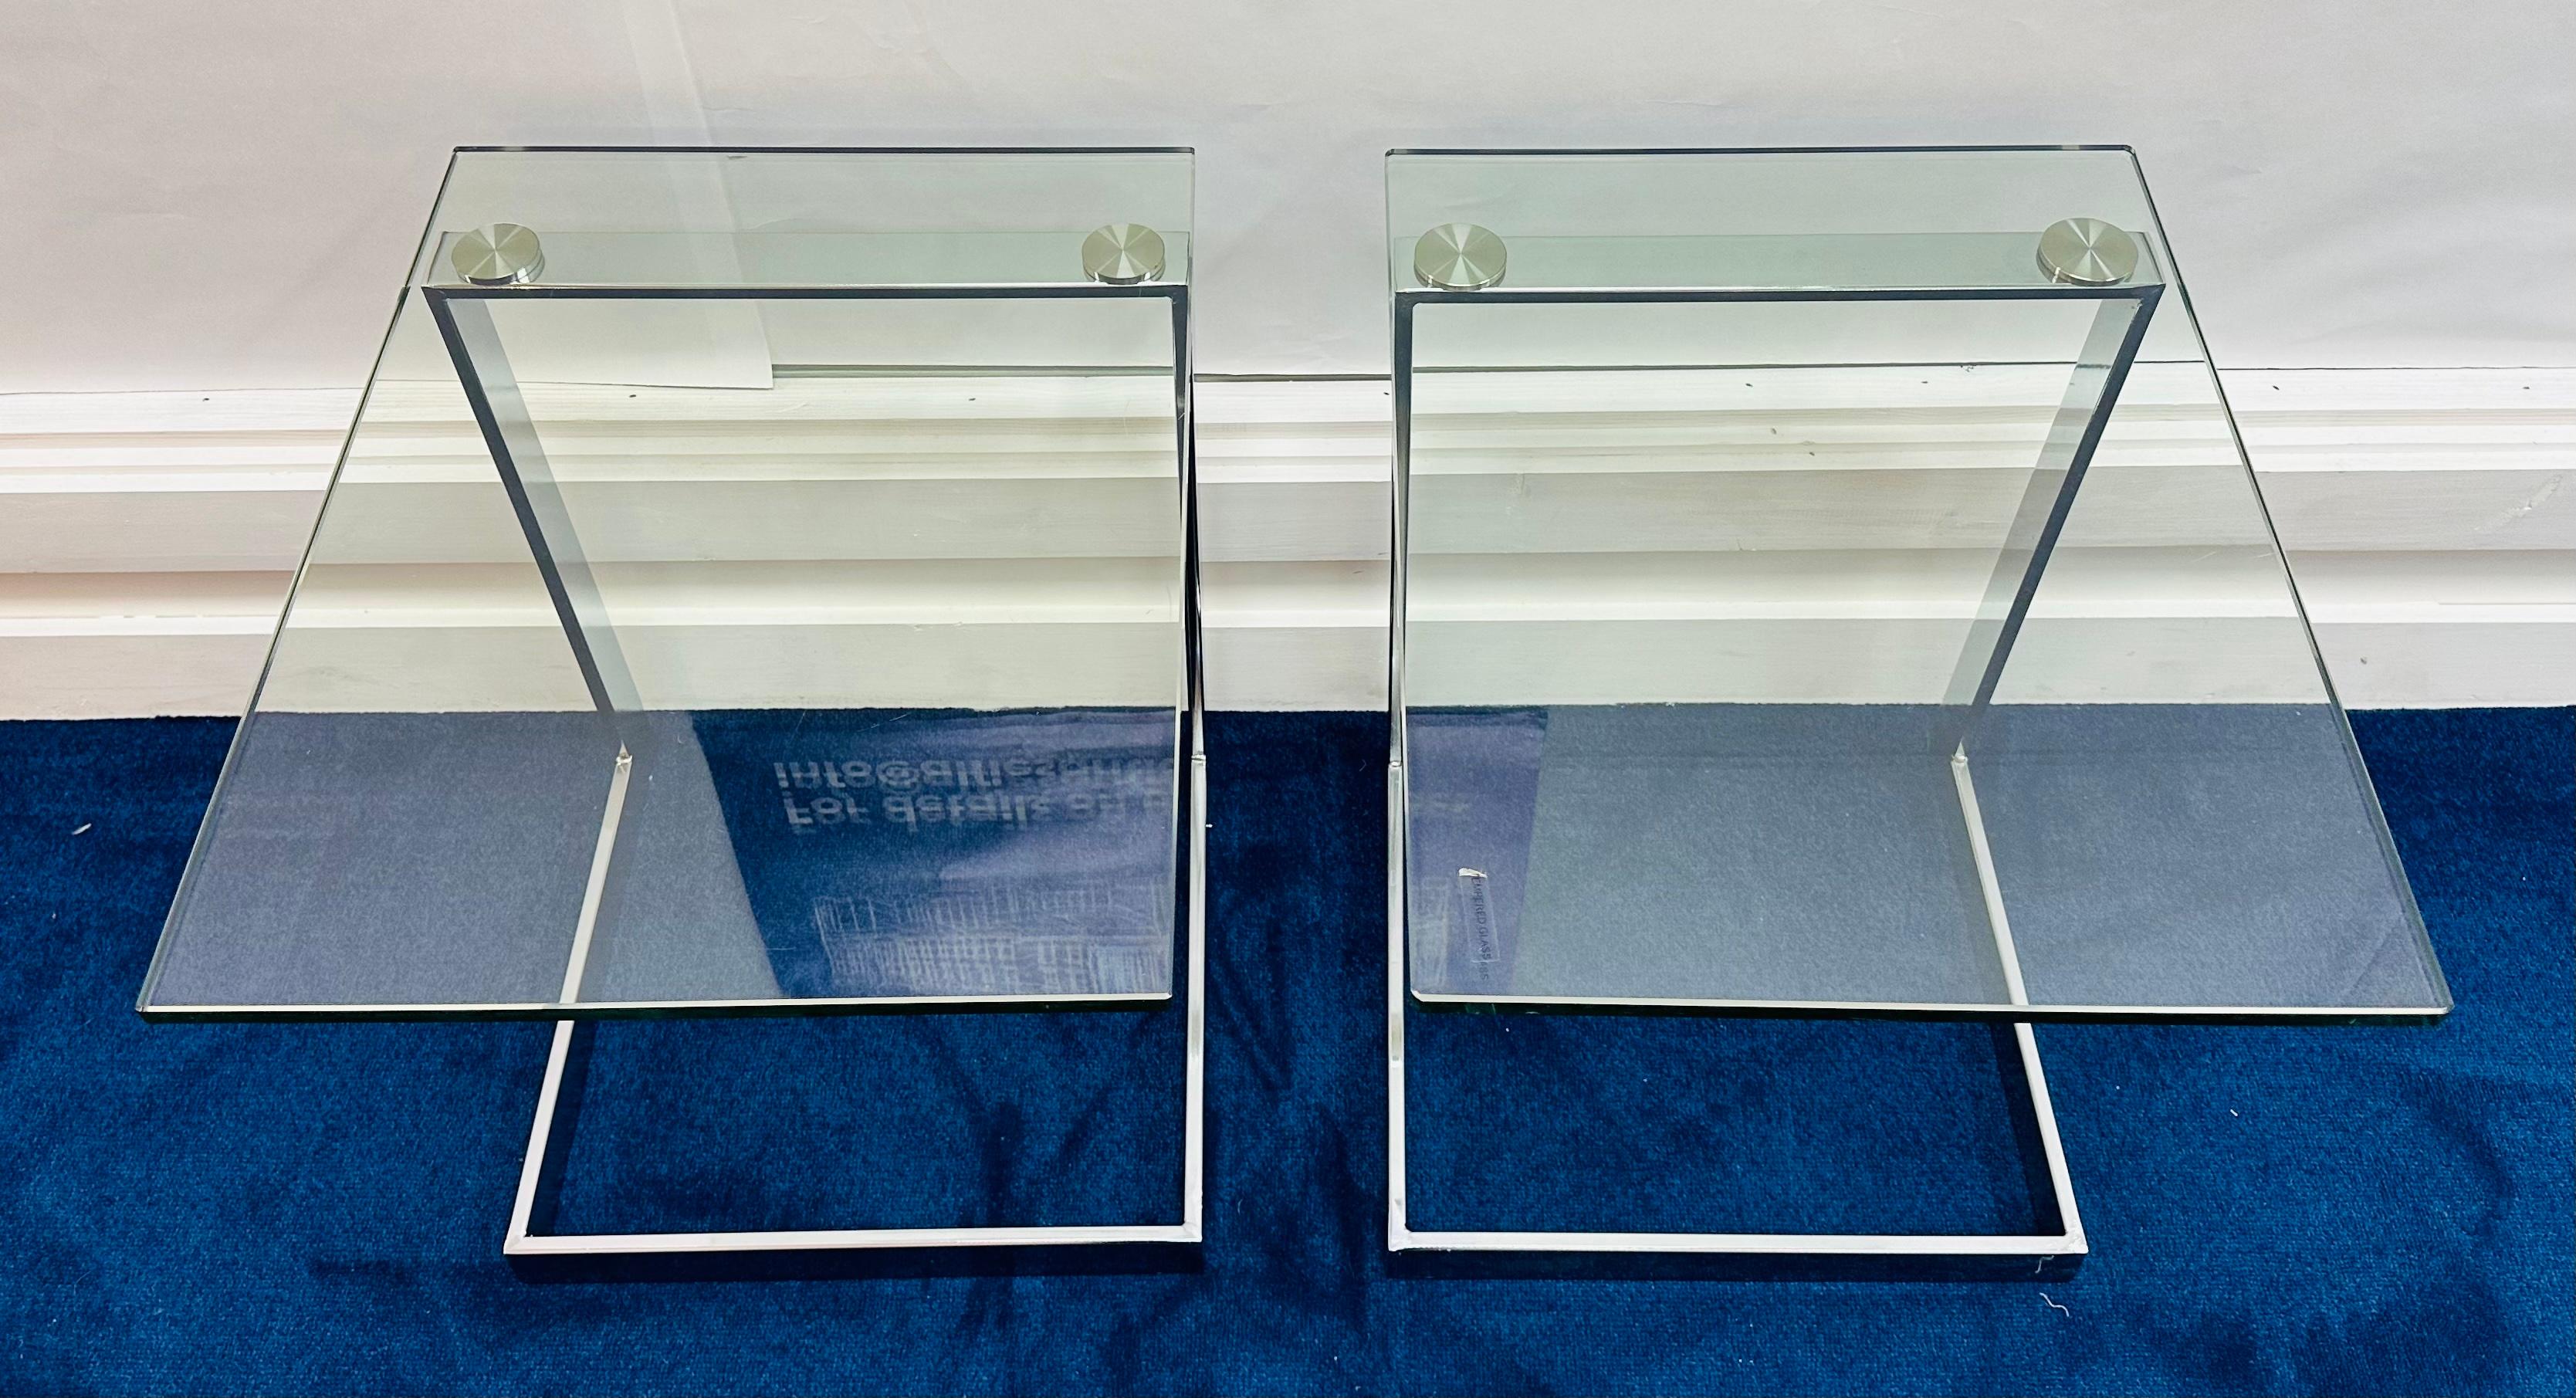 Paire de tables basses, tables d'appoint ou tables de chevet postmodernes allemandes des années 1980 (Design/One) de GEBRA, avec un plateau flottant en verre trempé en porte-à-faux.  Les deux tables portent l'étiquette transparente d'origine du